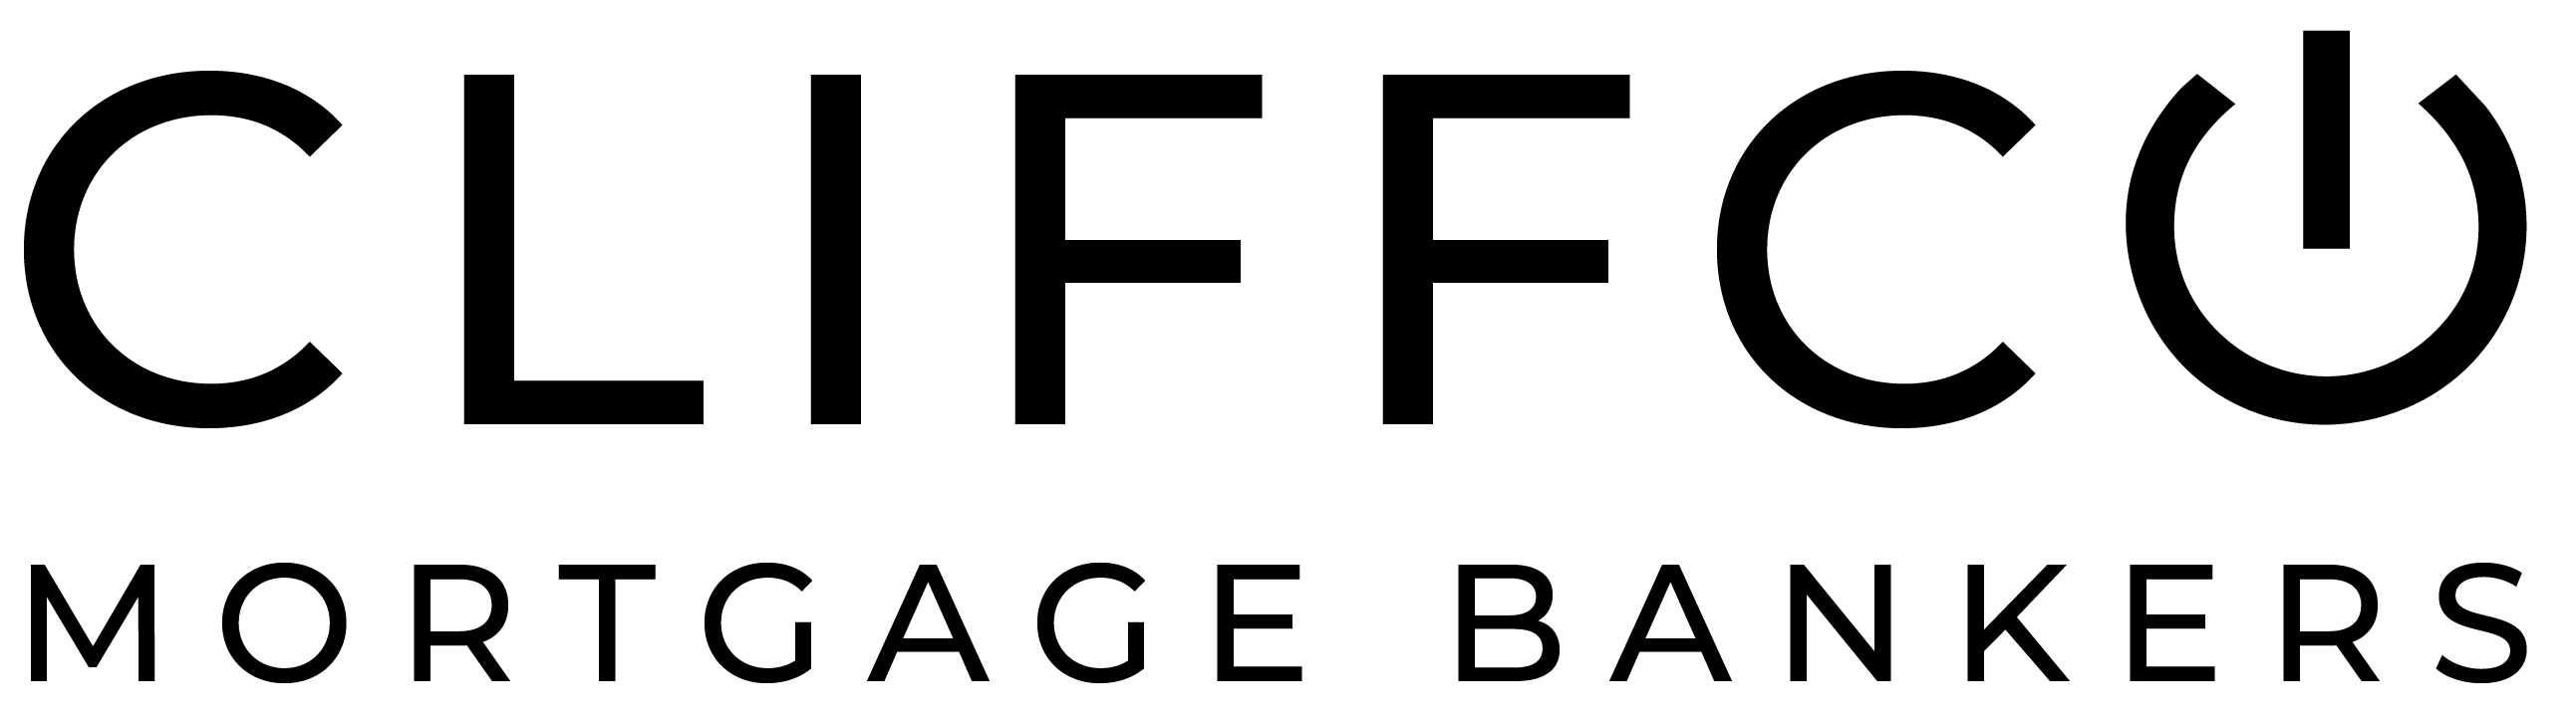 Steven Rivera Logo